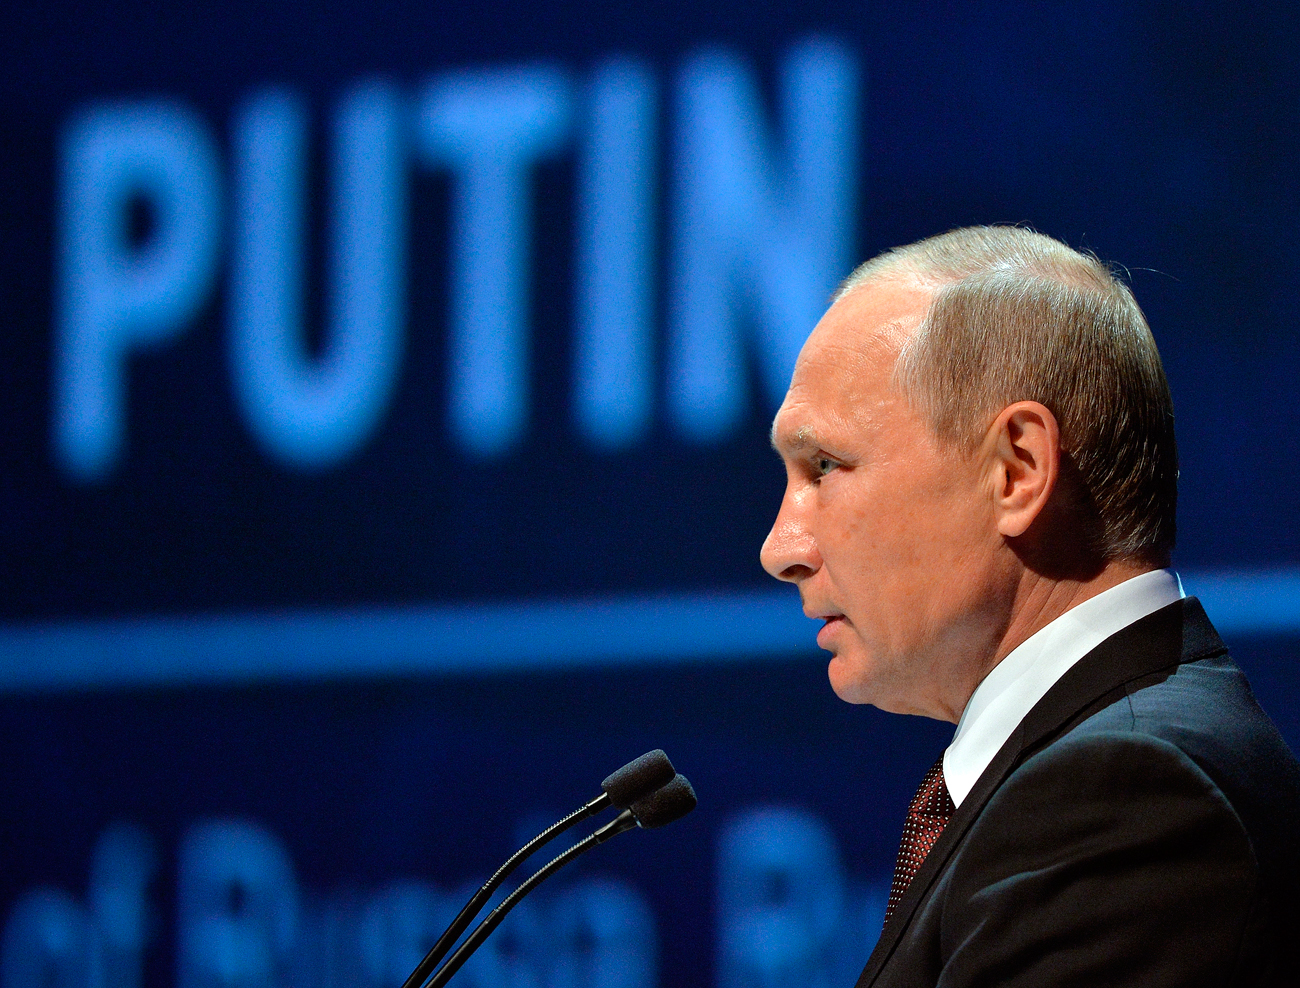 El presidente ruso Vladímir Putin durante su discurso en el Congreso Mundial de Energía celebrado en Estambul.